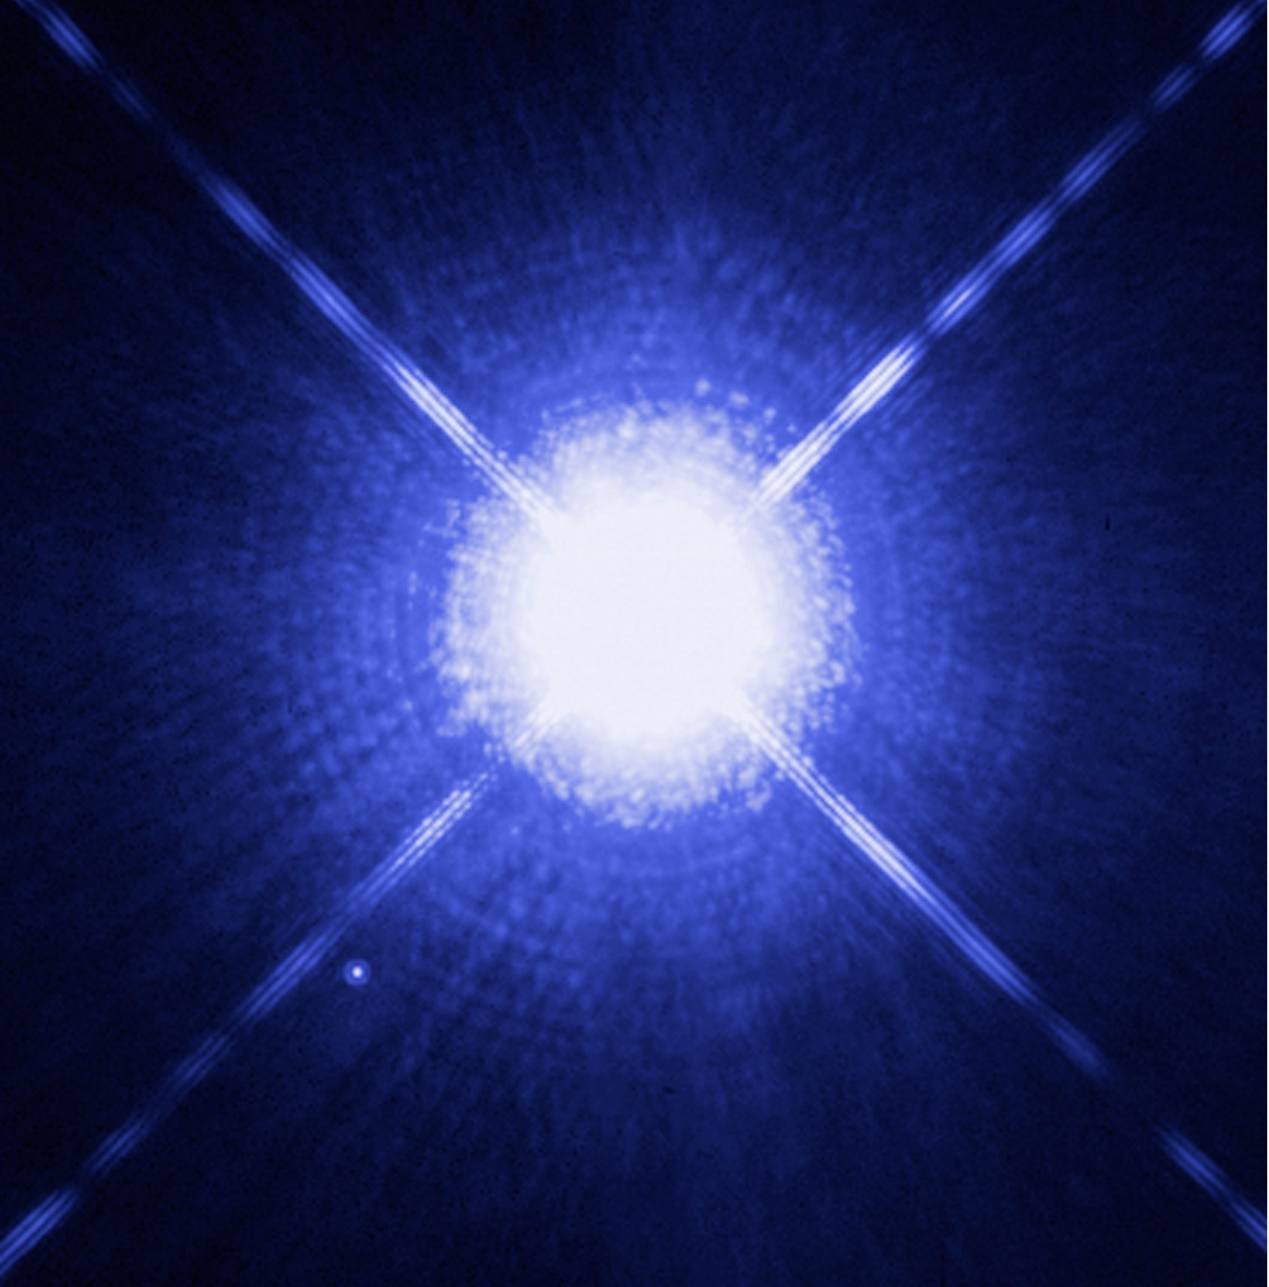 那些冷却速度较慢的白矮星，谁是它们的保温源？氖还是铁？